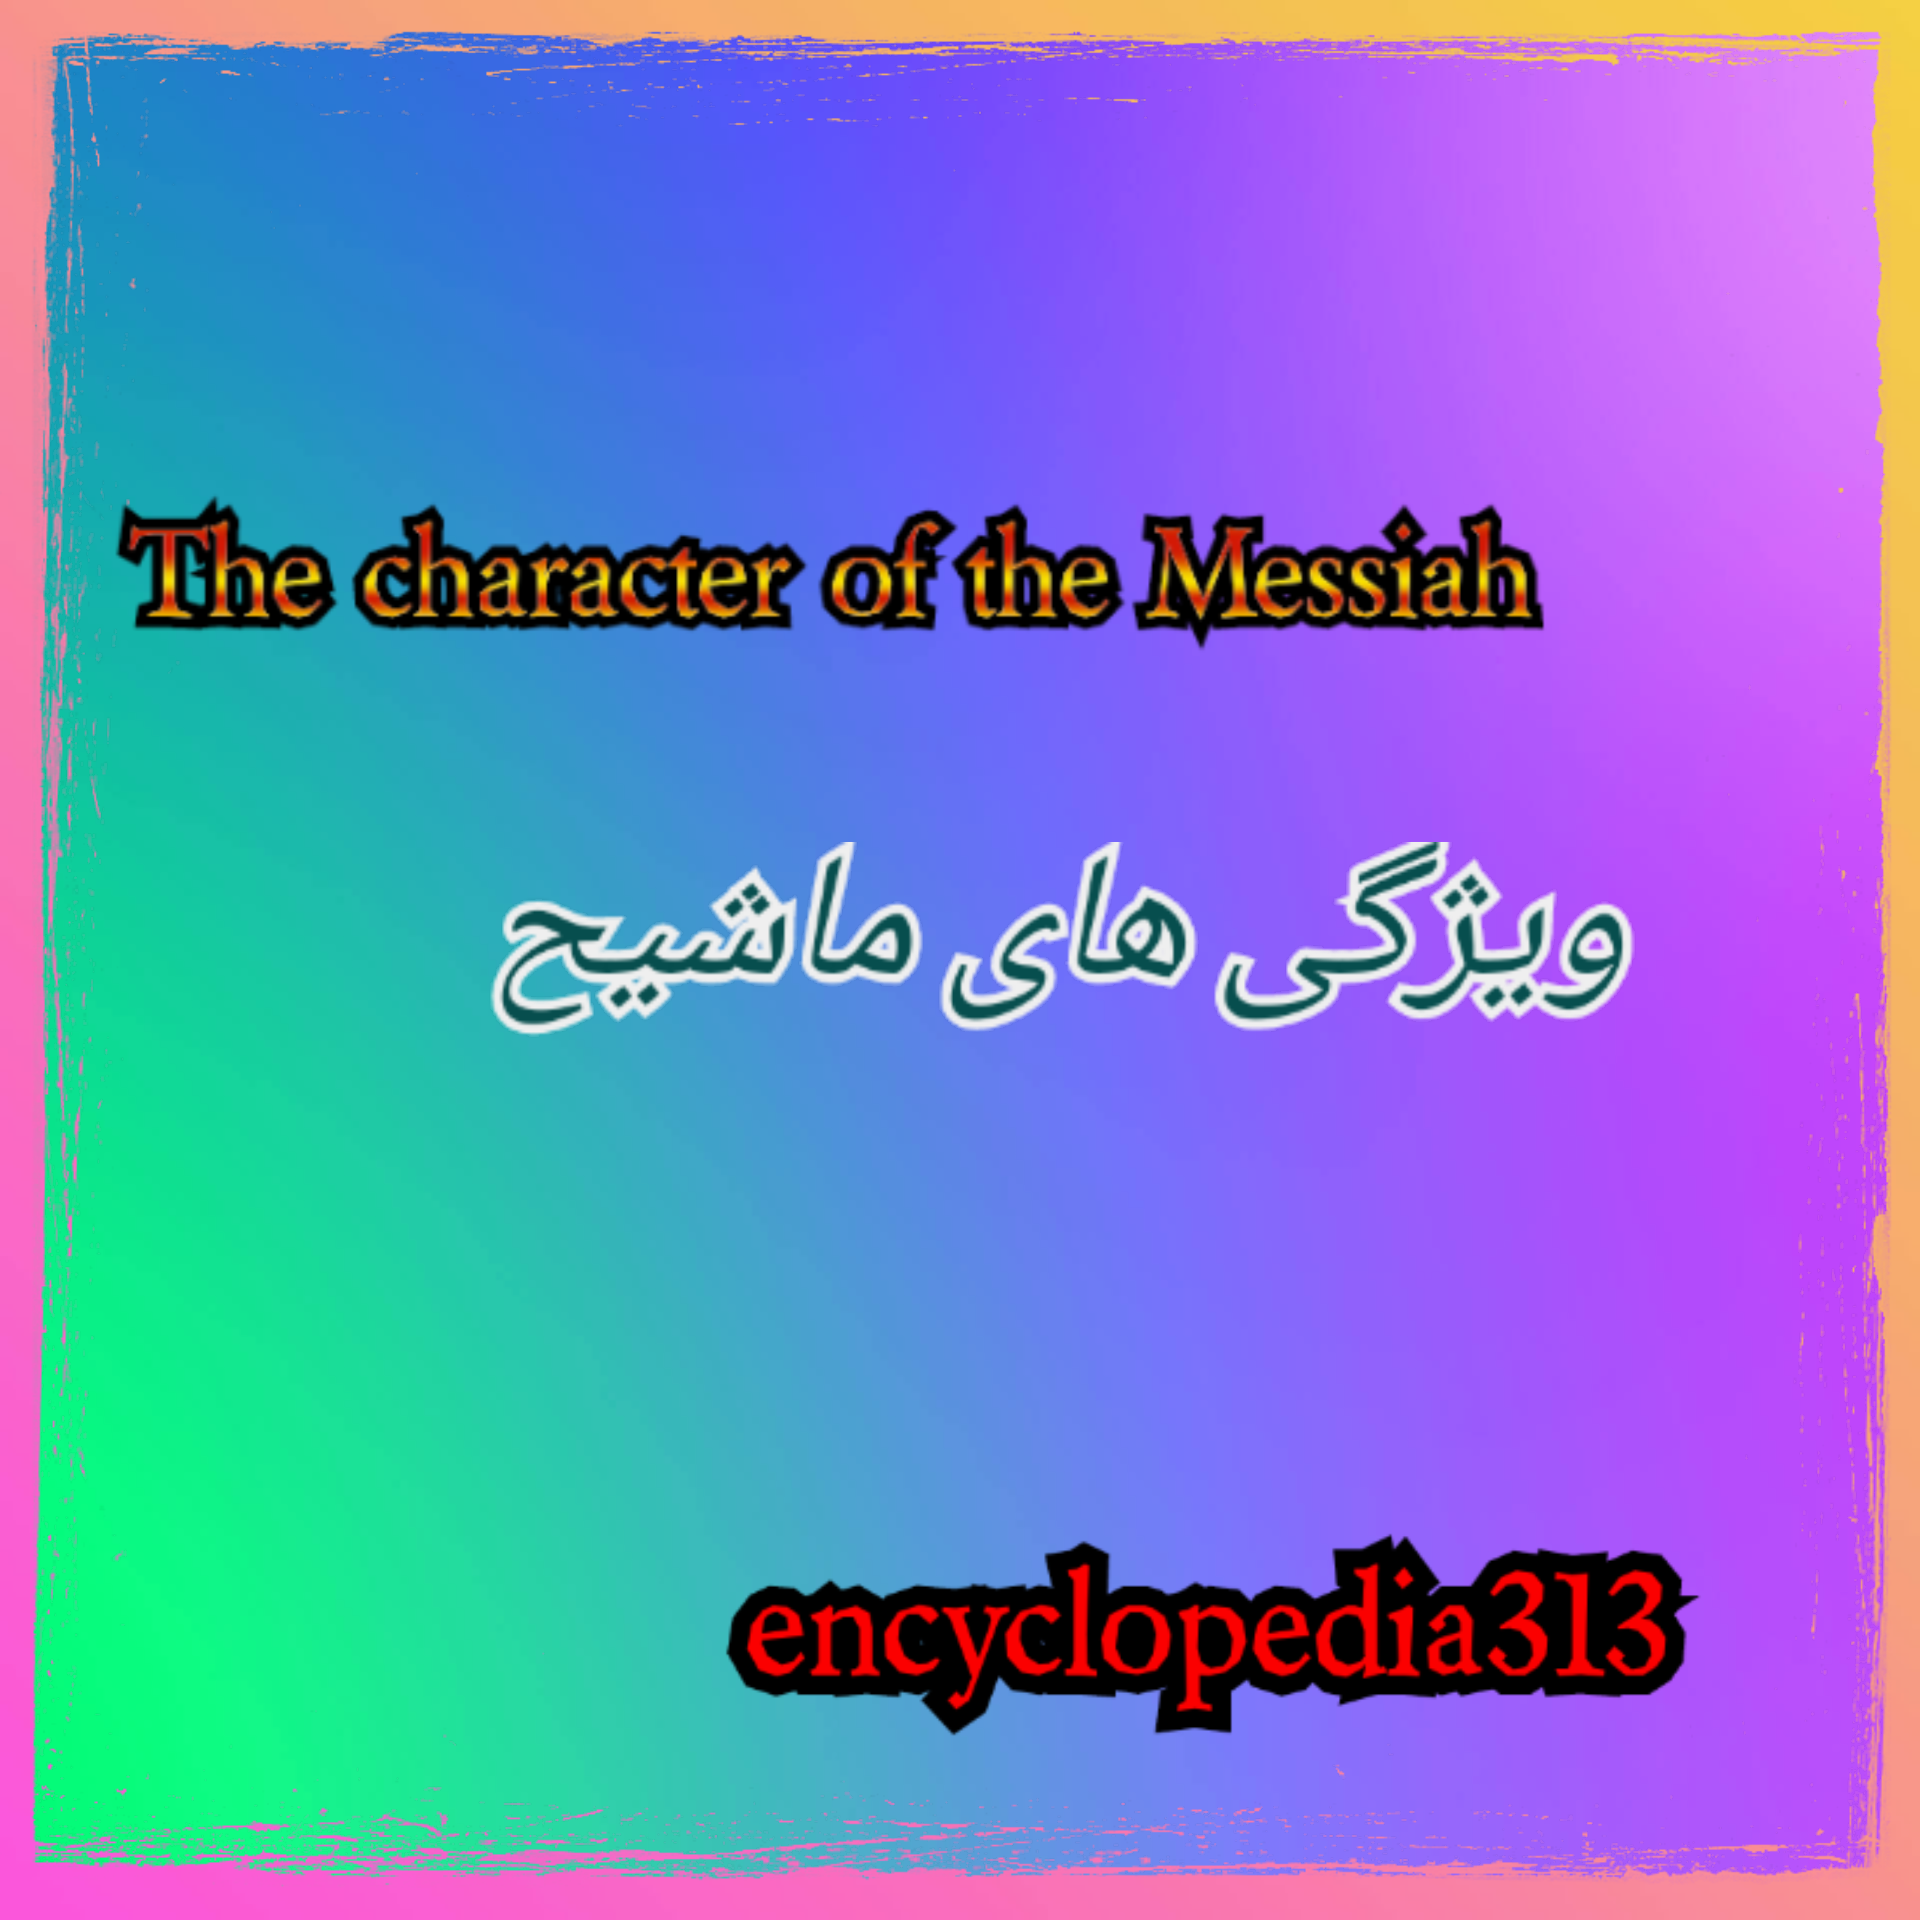 ویژگی های ماشیح،The character of the Messiah